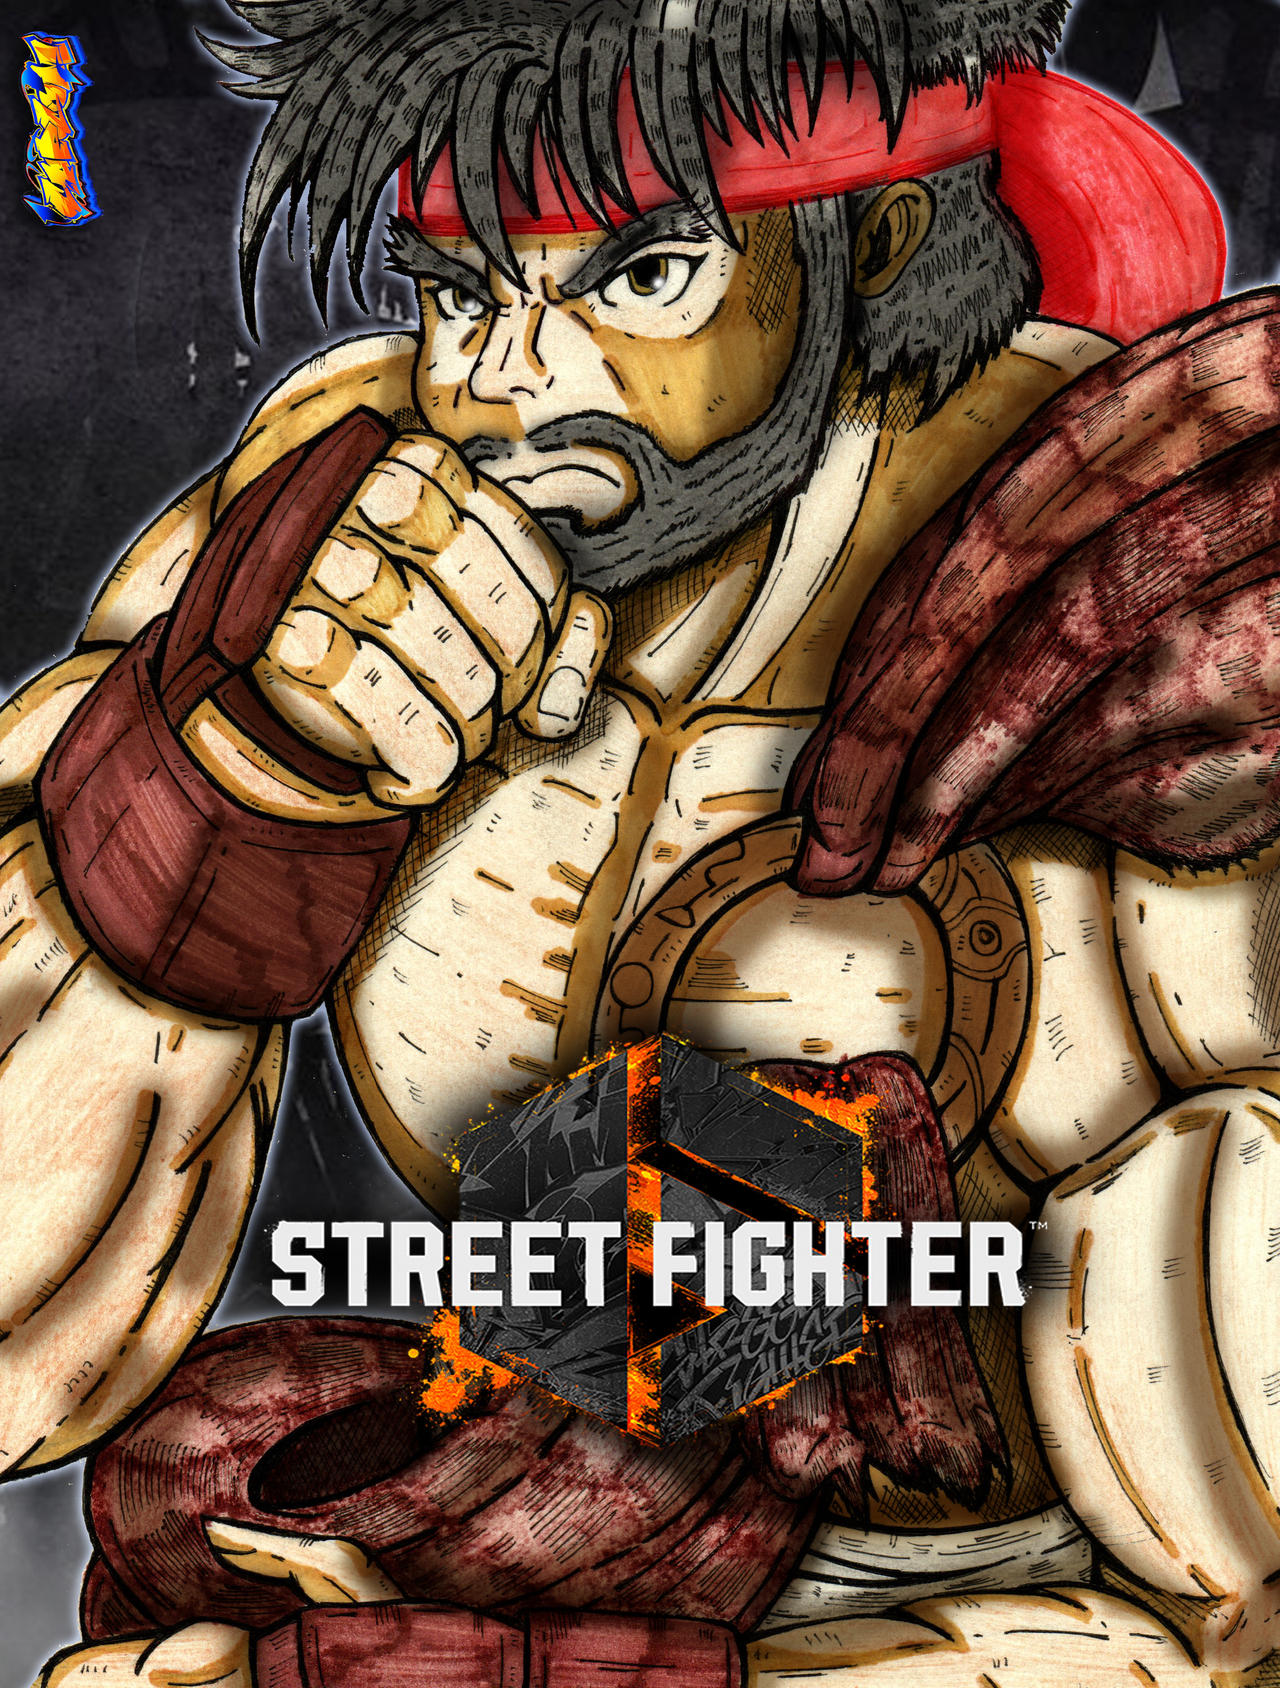 Akuma - Street Fighter by digitalninja on DeviantArt